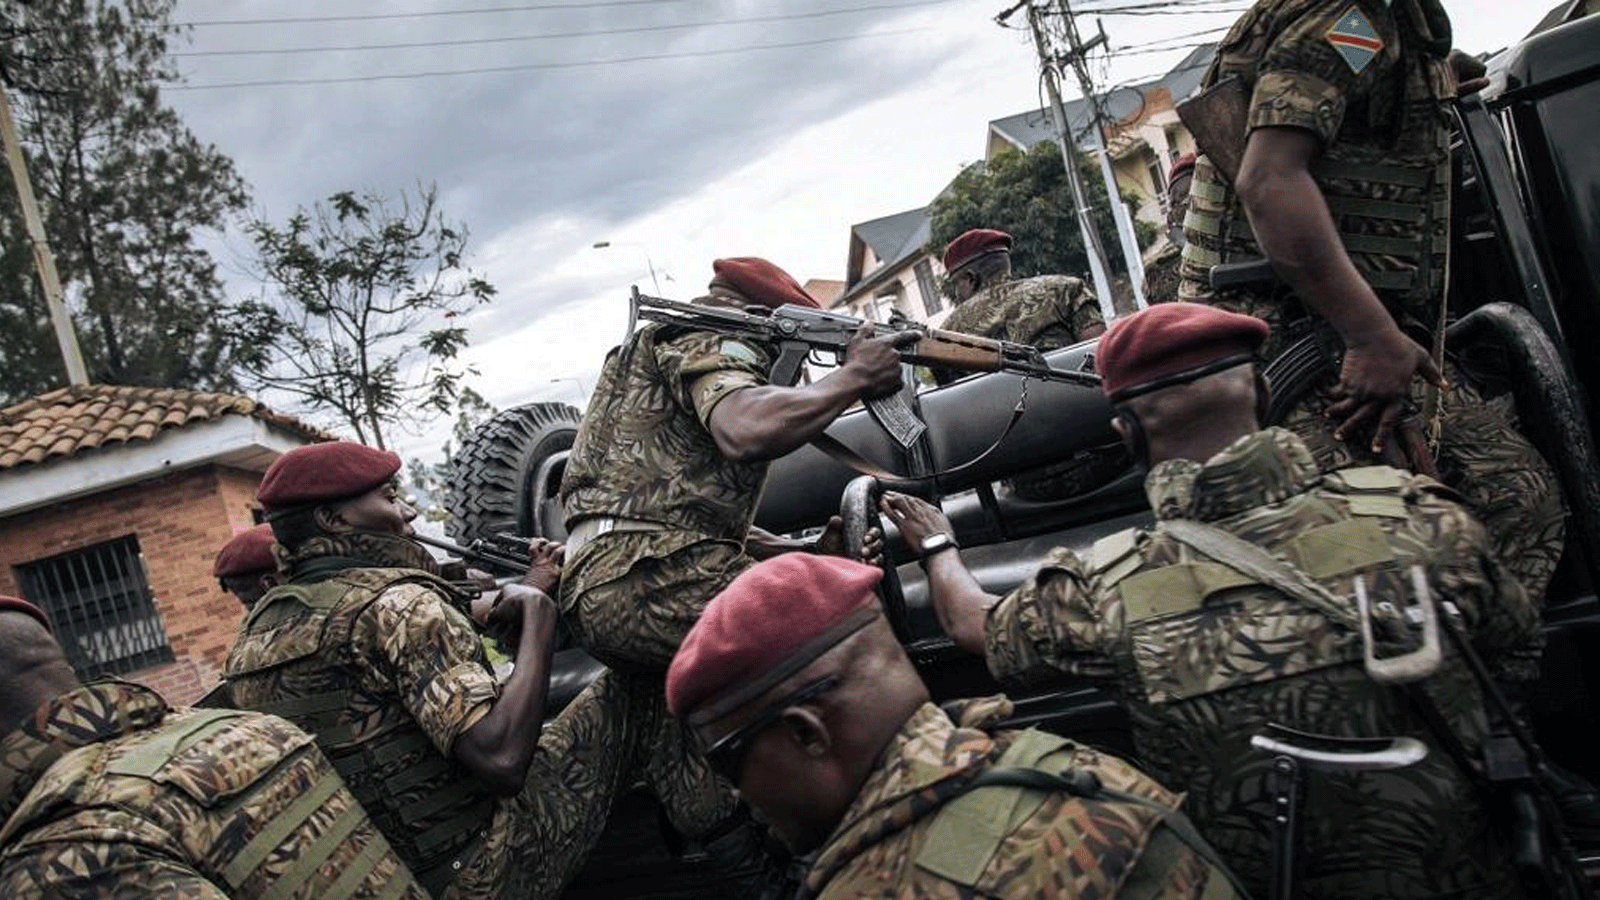 جنود كونغوليون يعملون في مقاطعة شمال كيفو الواقعة في شمال شرق جمهورية الكونغو الديمقراطية، في أيار\مايو 2021.